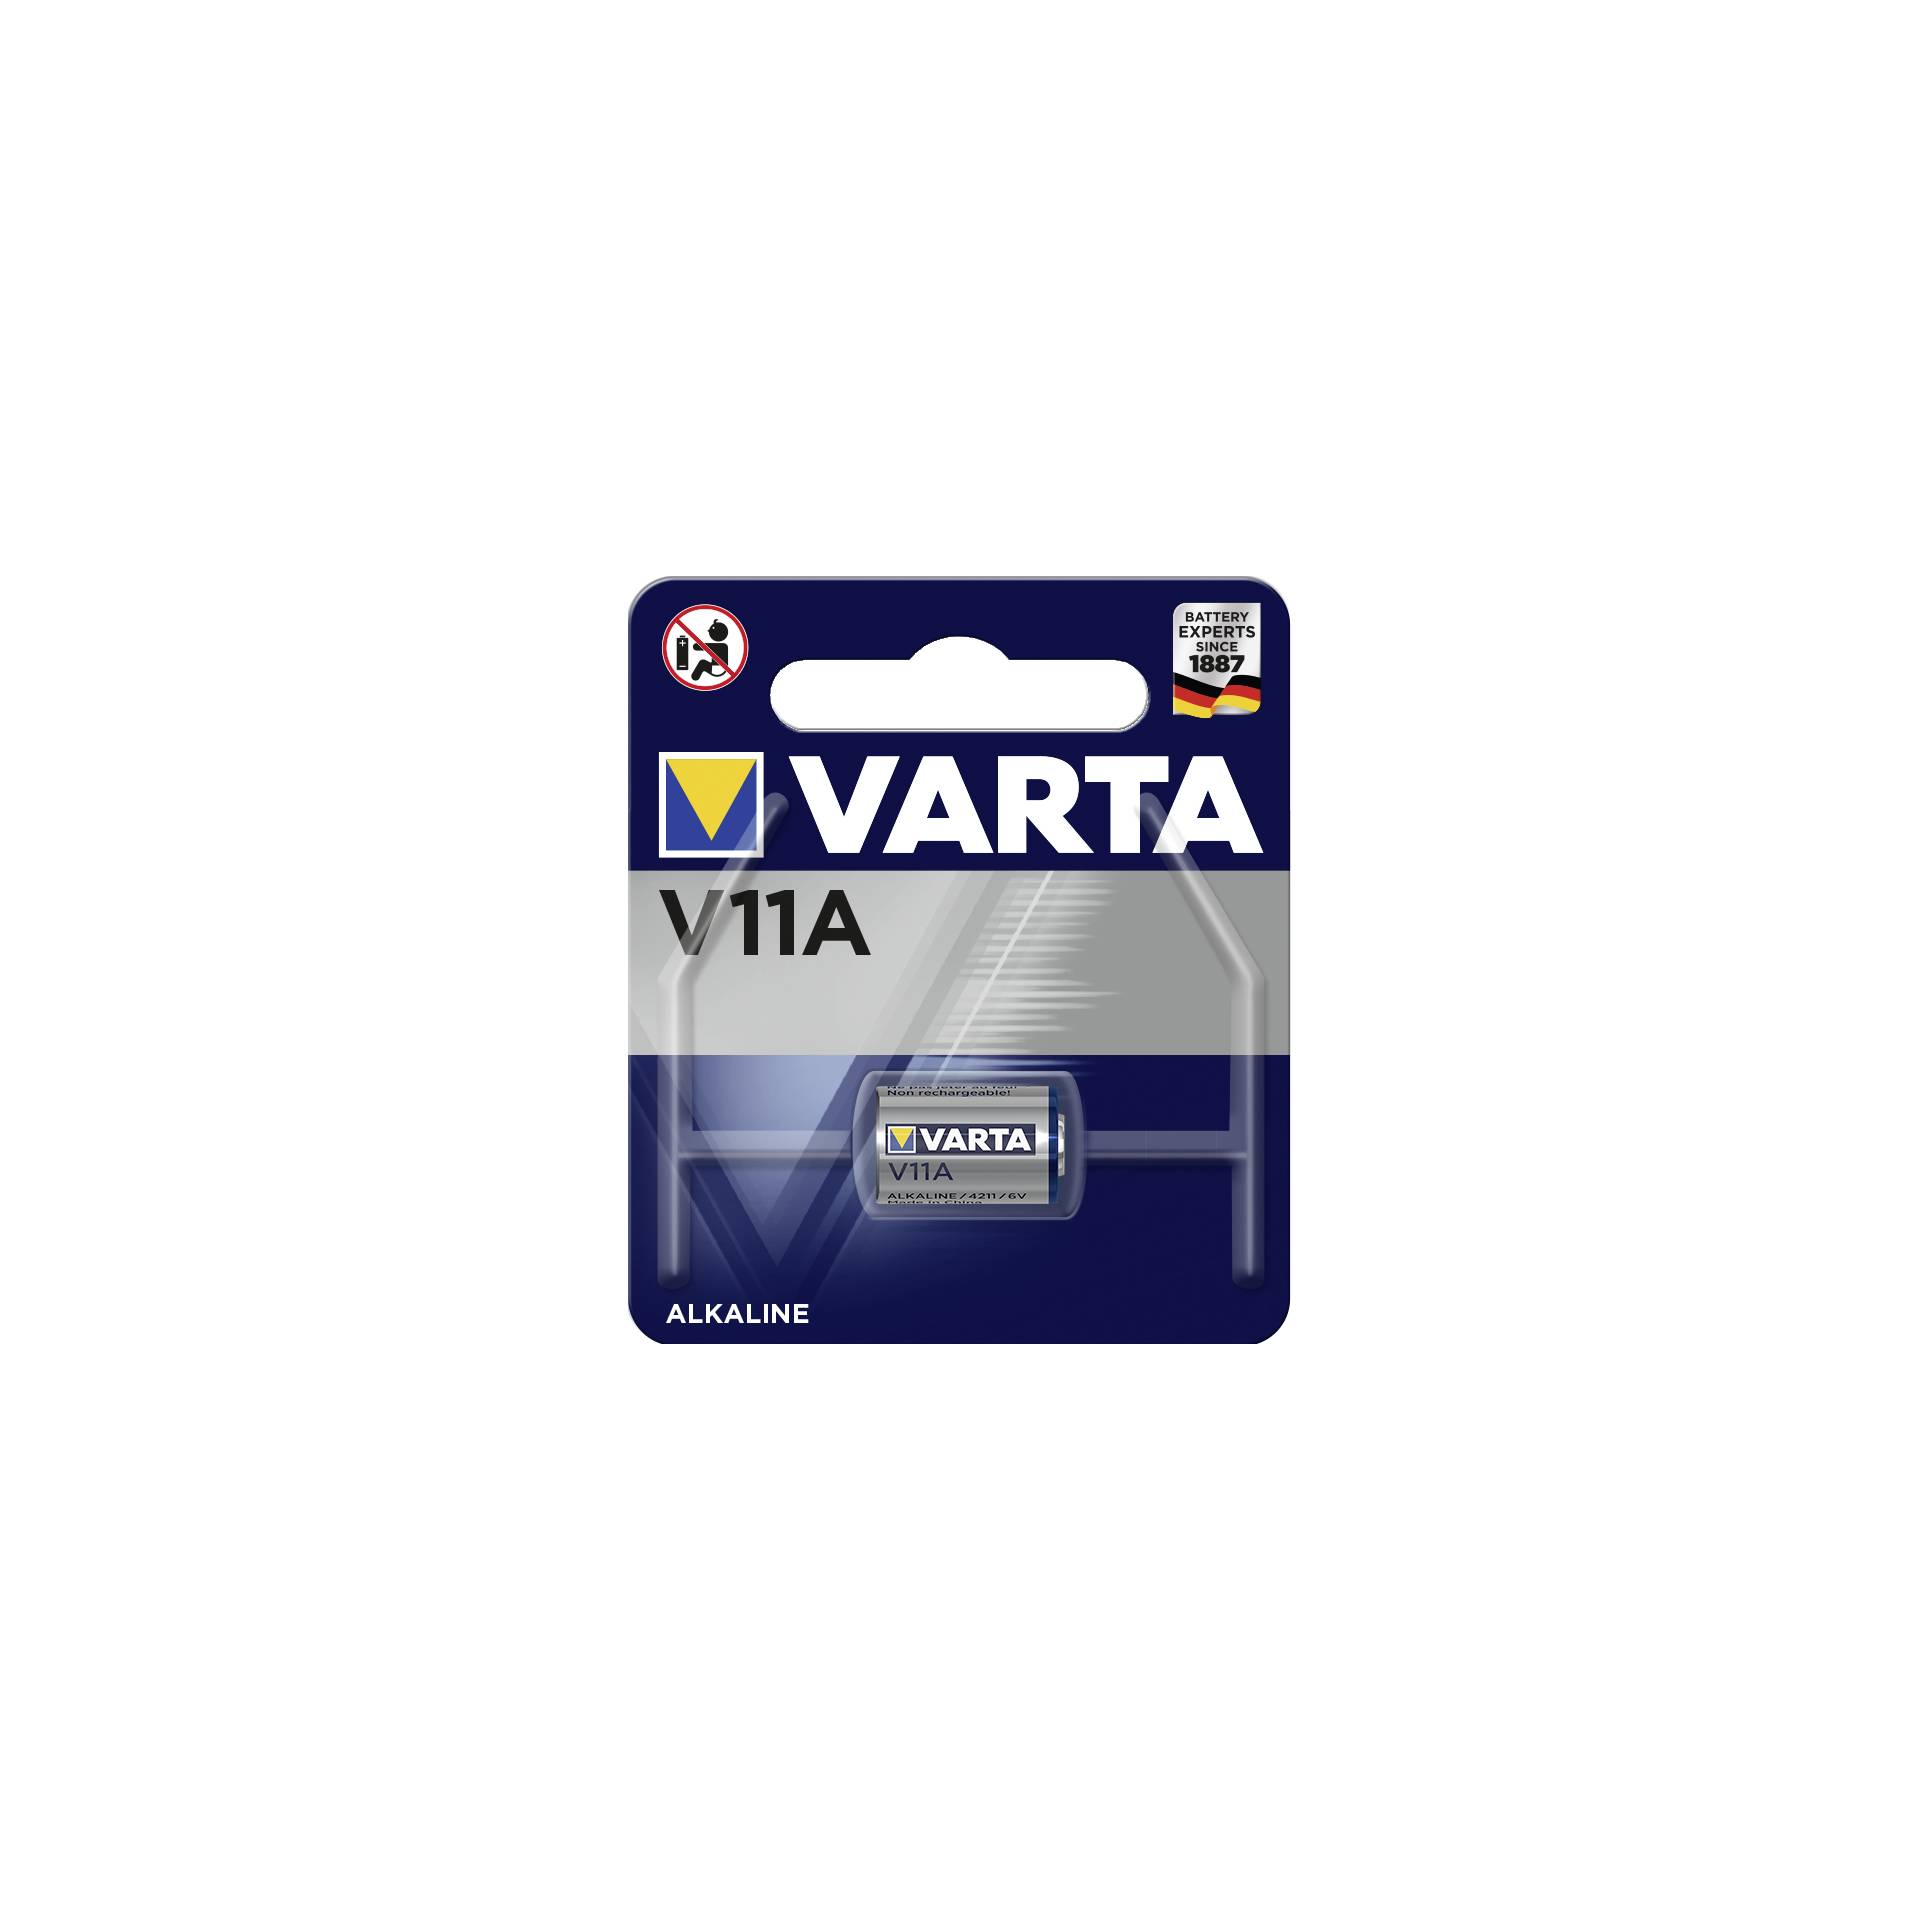 10x1 Varta electronic V 11 A